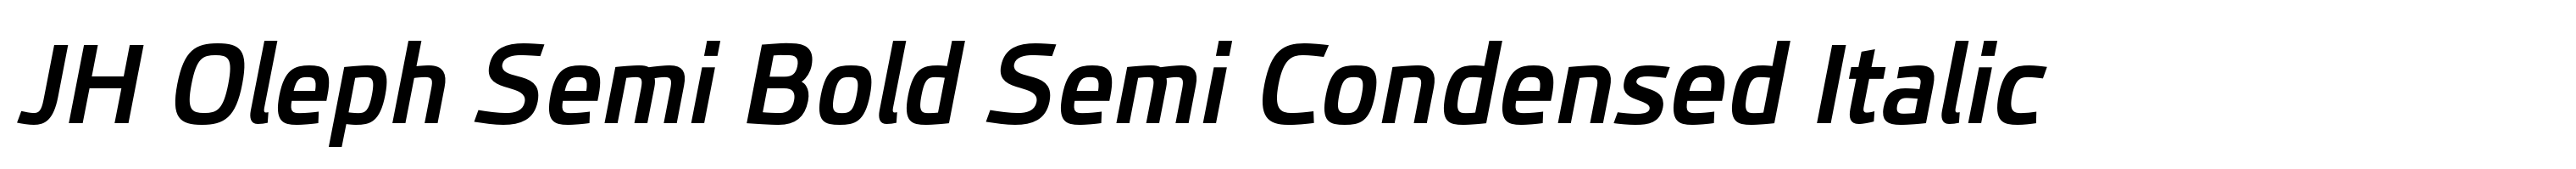 JH Oleph Semi Bold Semi Condensed Italic